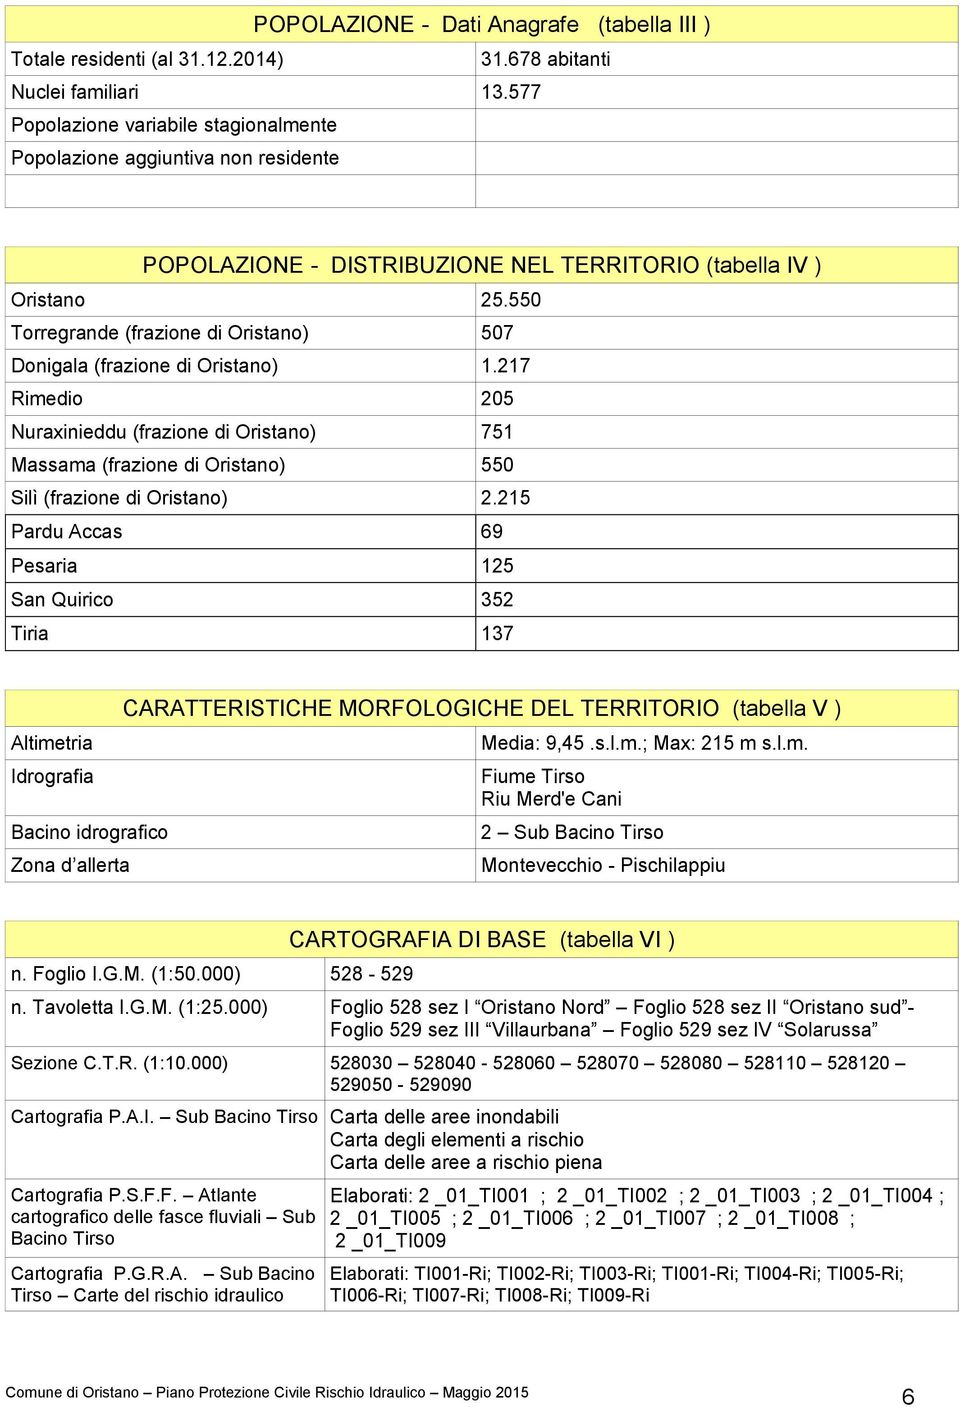 550 Torregrande (frazione di Oristano) 507 Donigala (frazione di Oristano) 1.217 Rimedio 205 Nuraxinieddu (frazione di Oristano) 751 Massama (frazione di Oristano) 550 Silì (frazione di Oristano) 2.